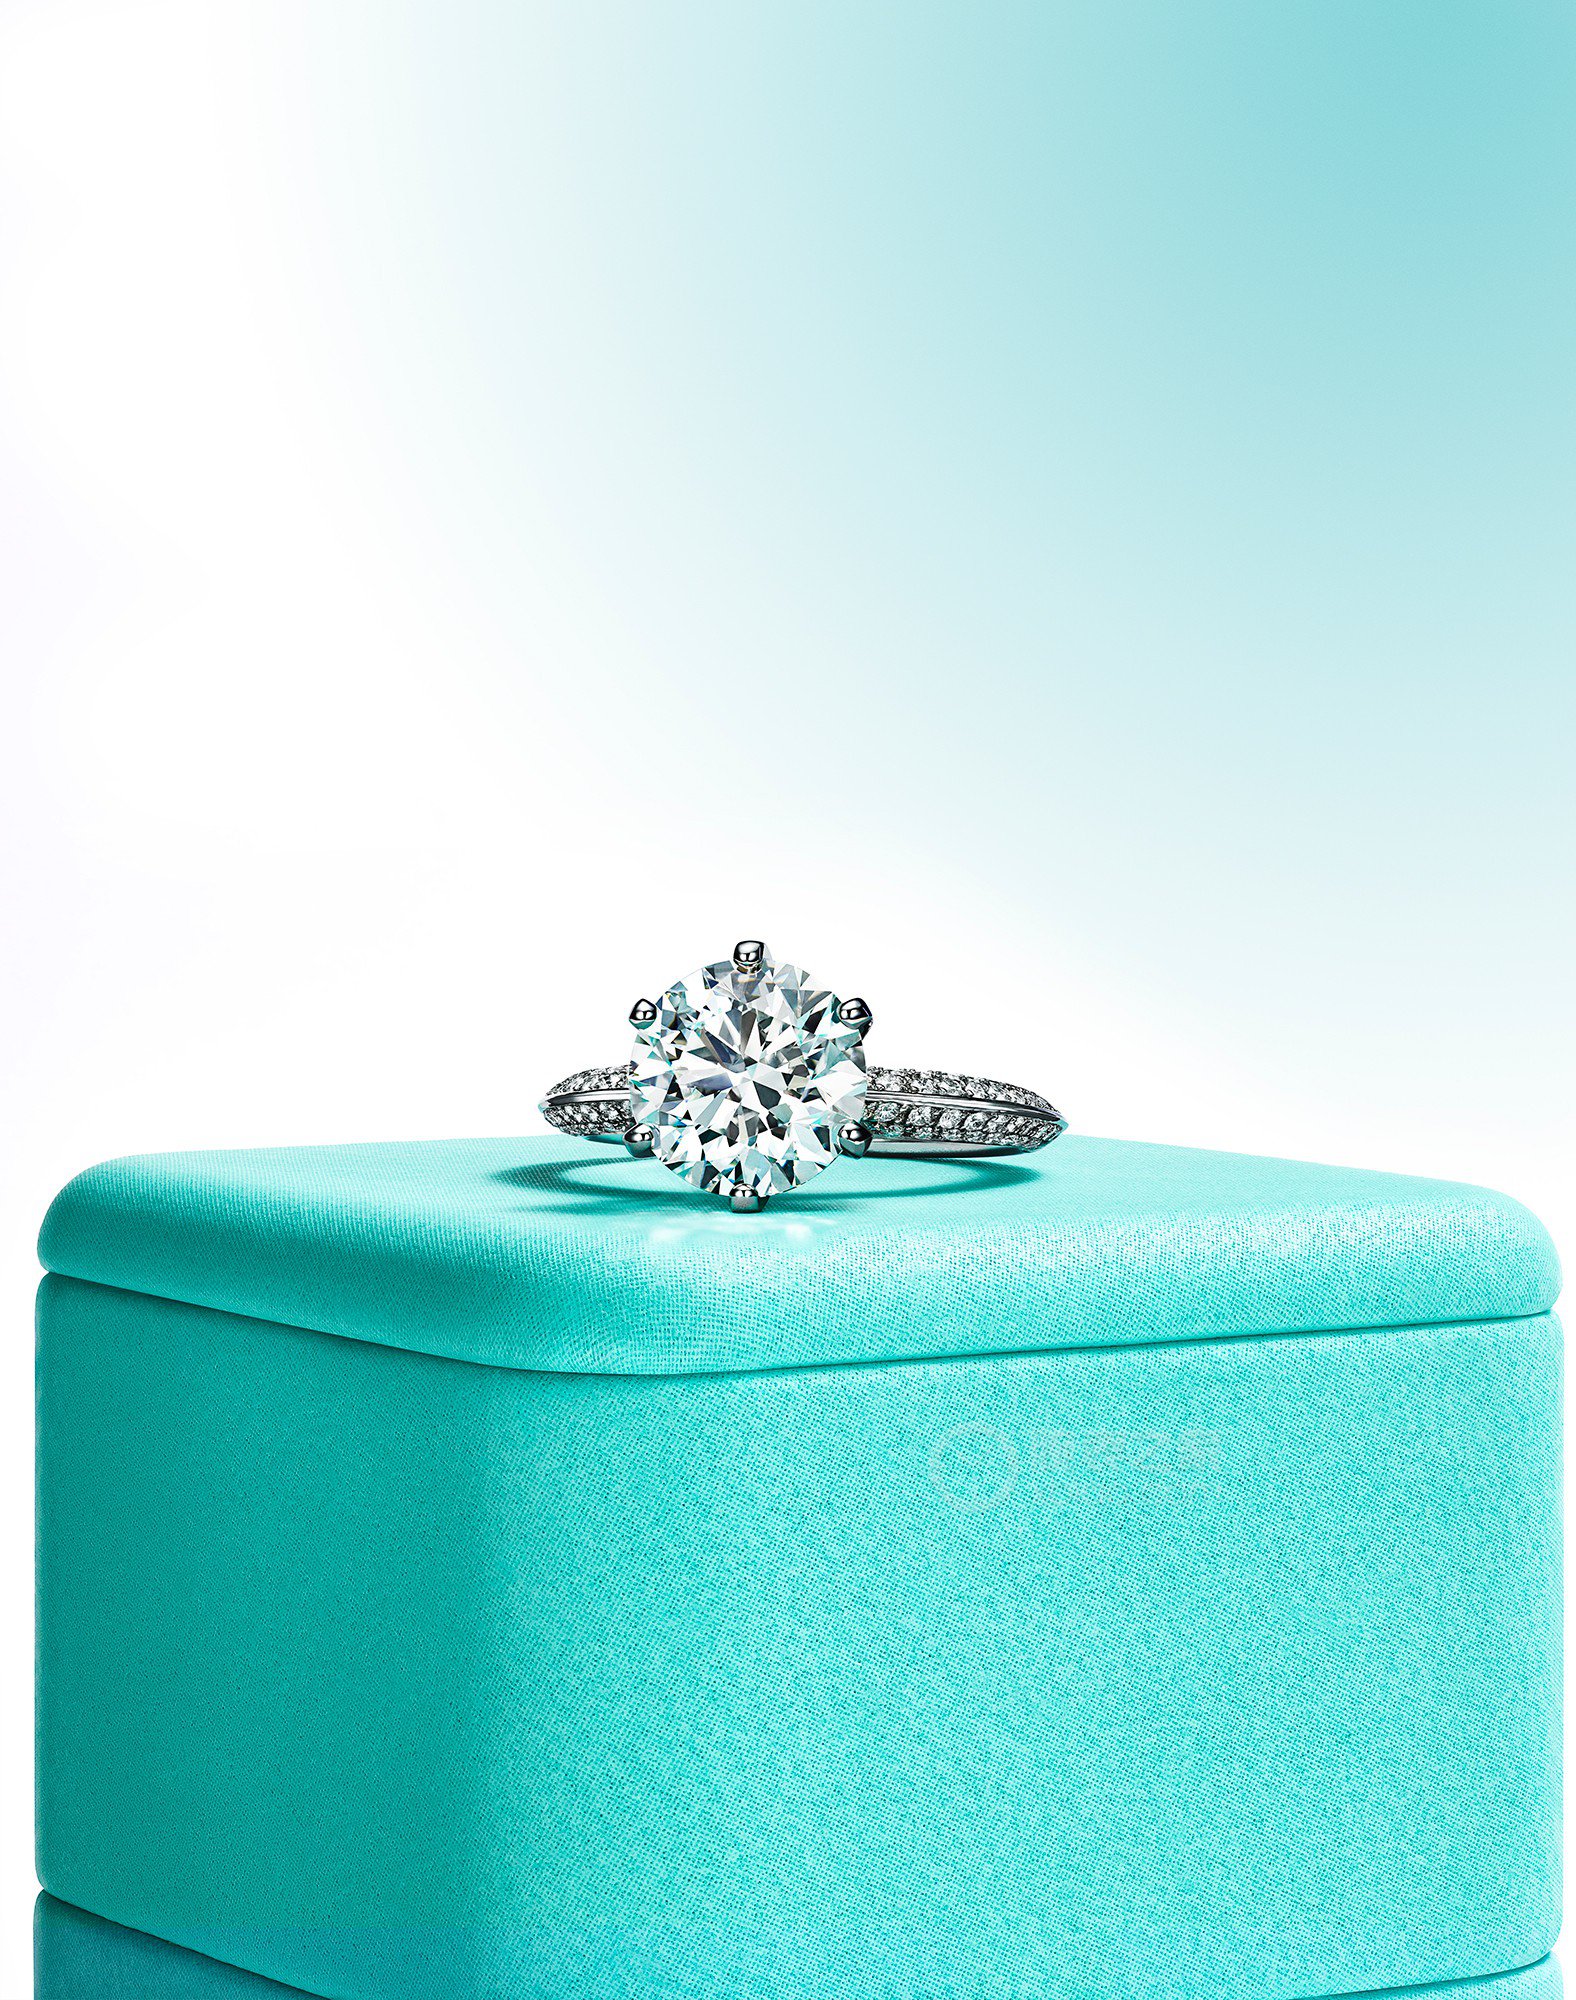 蒂芙尼订婚钻戒铂金铺镶钻石戒圈六爪镶嵌订婚钻戒戒指